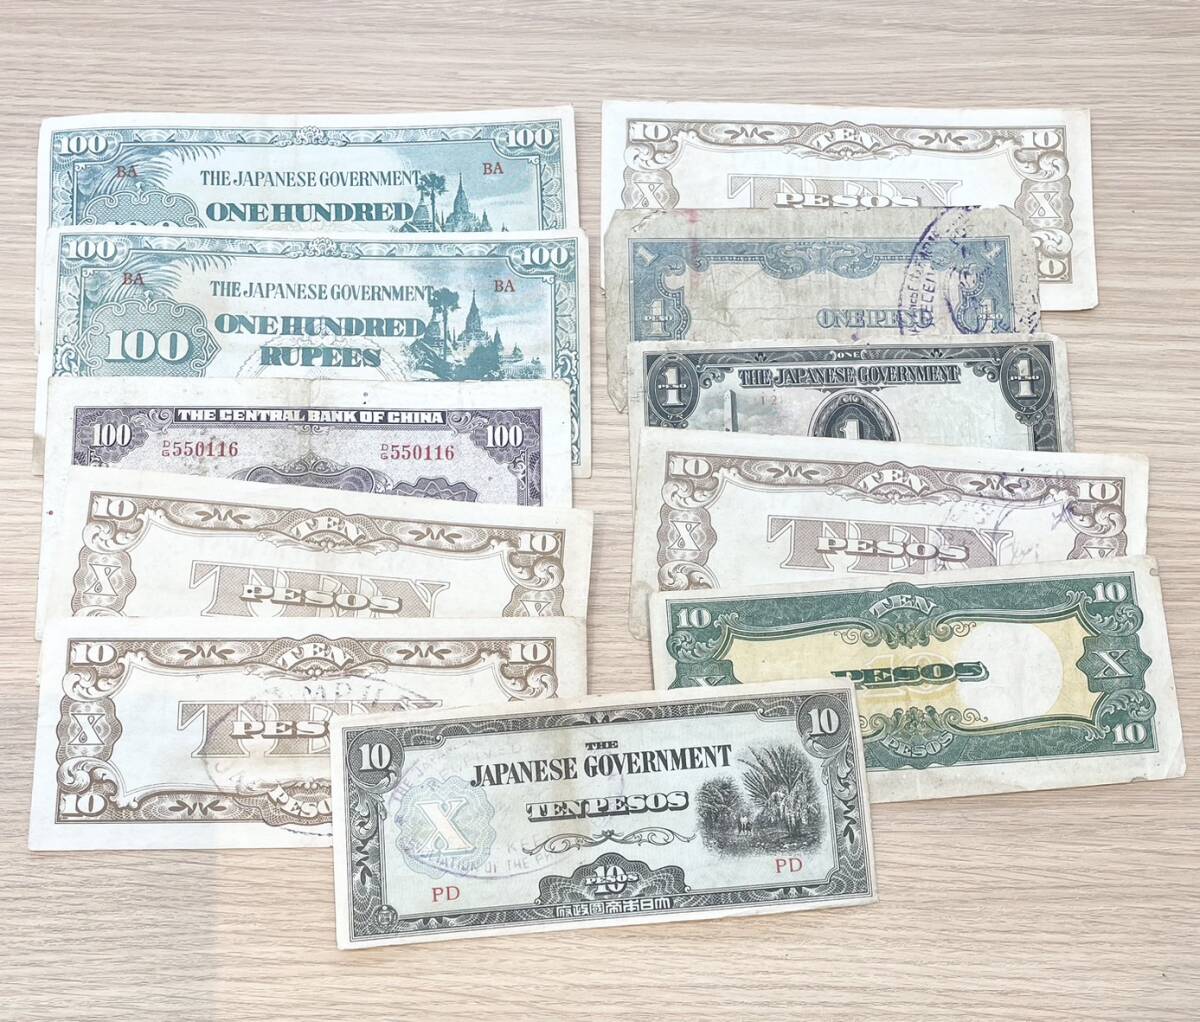 [JBI 4978a]1 иен старт много!! зарубежный sen зарубежный банкноты суммировать монета примерно 2780g банкноты старая монета .peso китайский человек . вместе мир Малайзия текущее состояние товар 